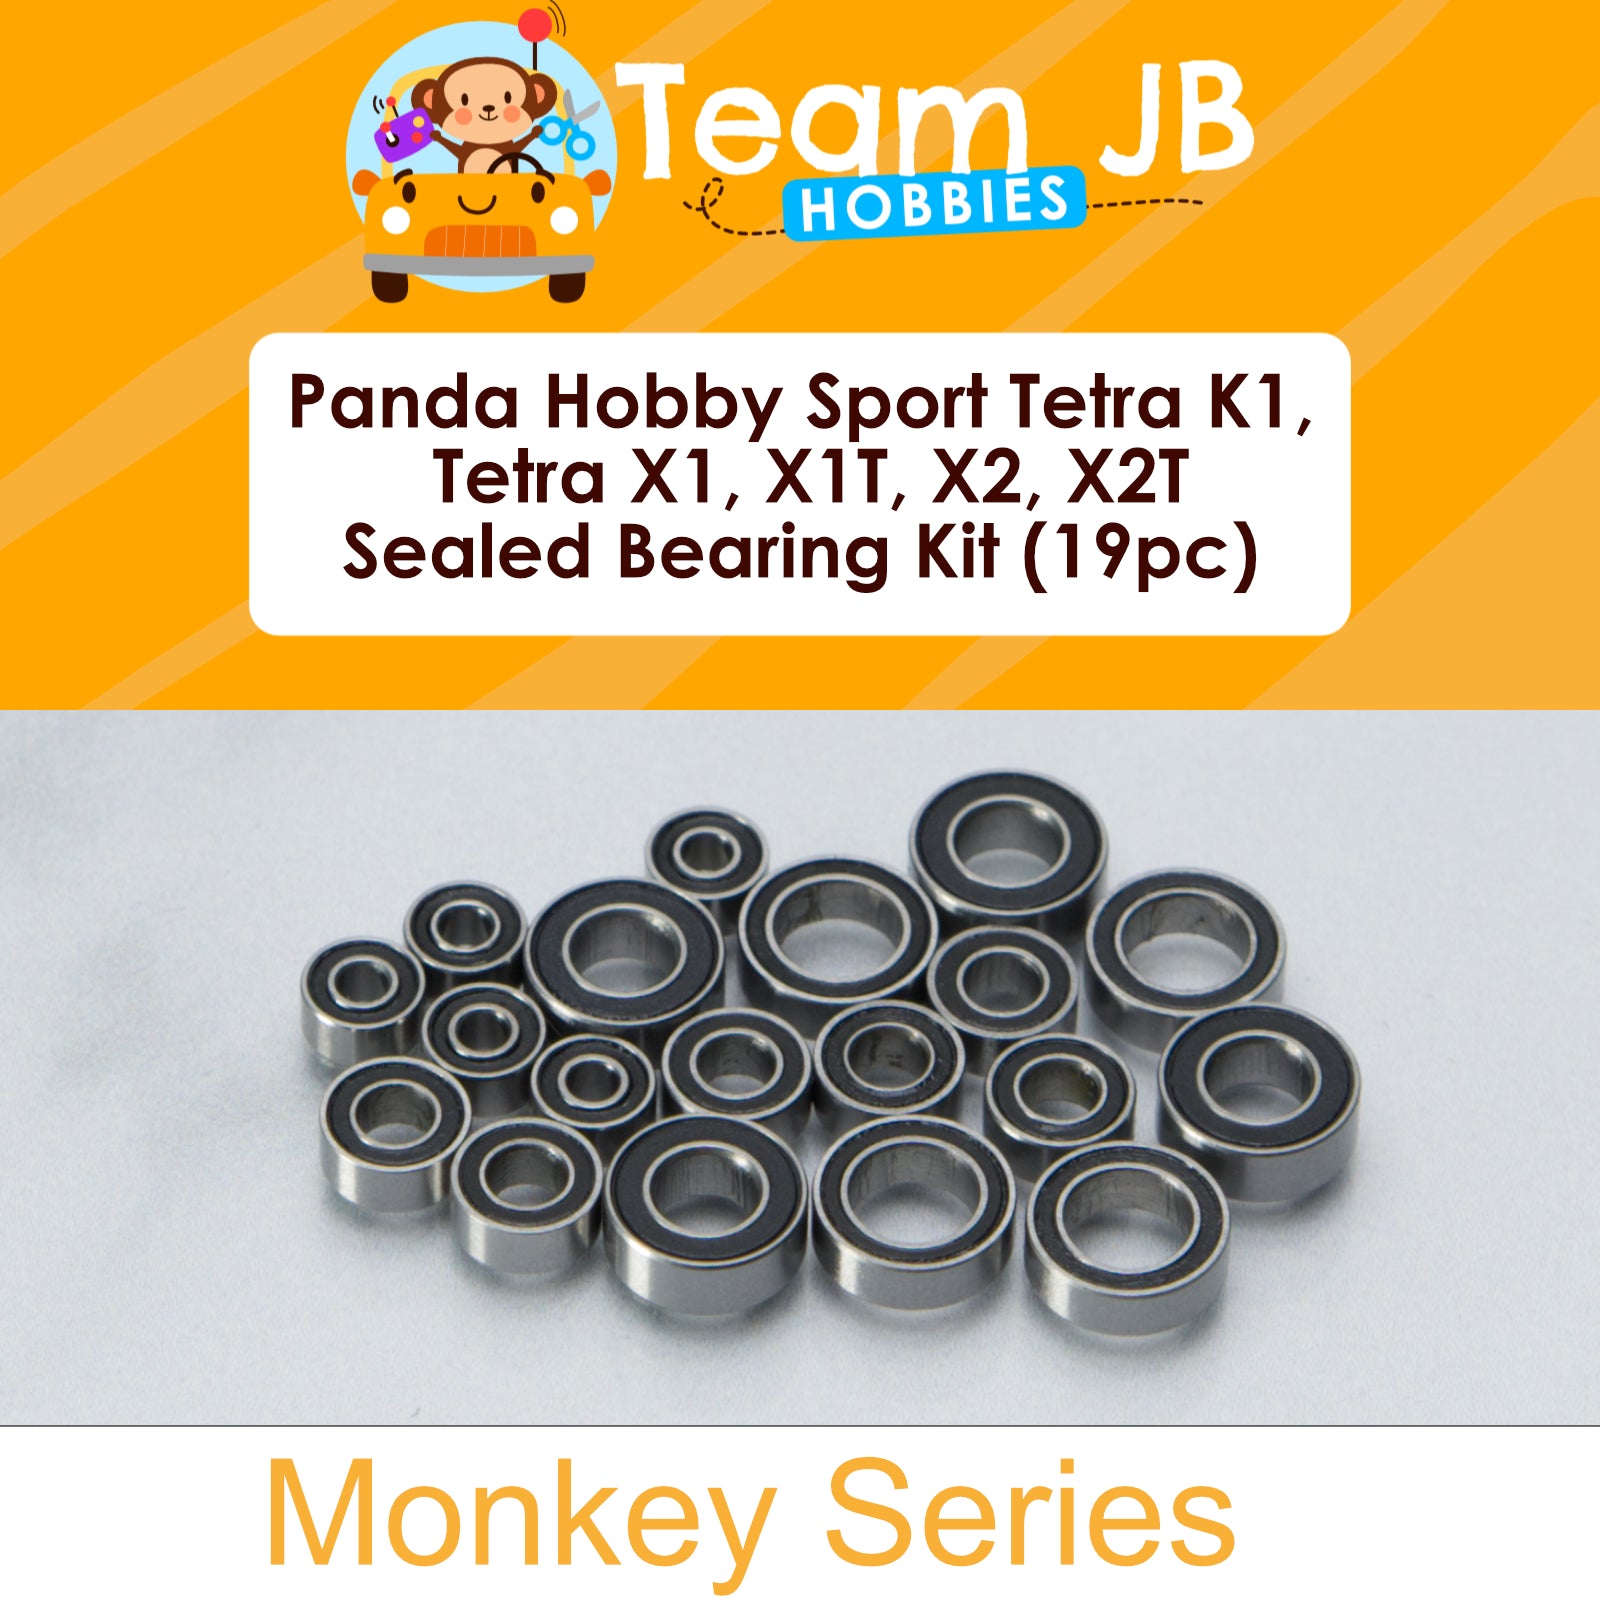 Panda Hobby Sport Tetra K1, Tetra X1, Tetra X1T, Tetra X2, Tetra X2T - Sealed Bearing Kit